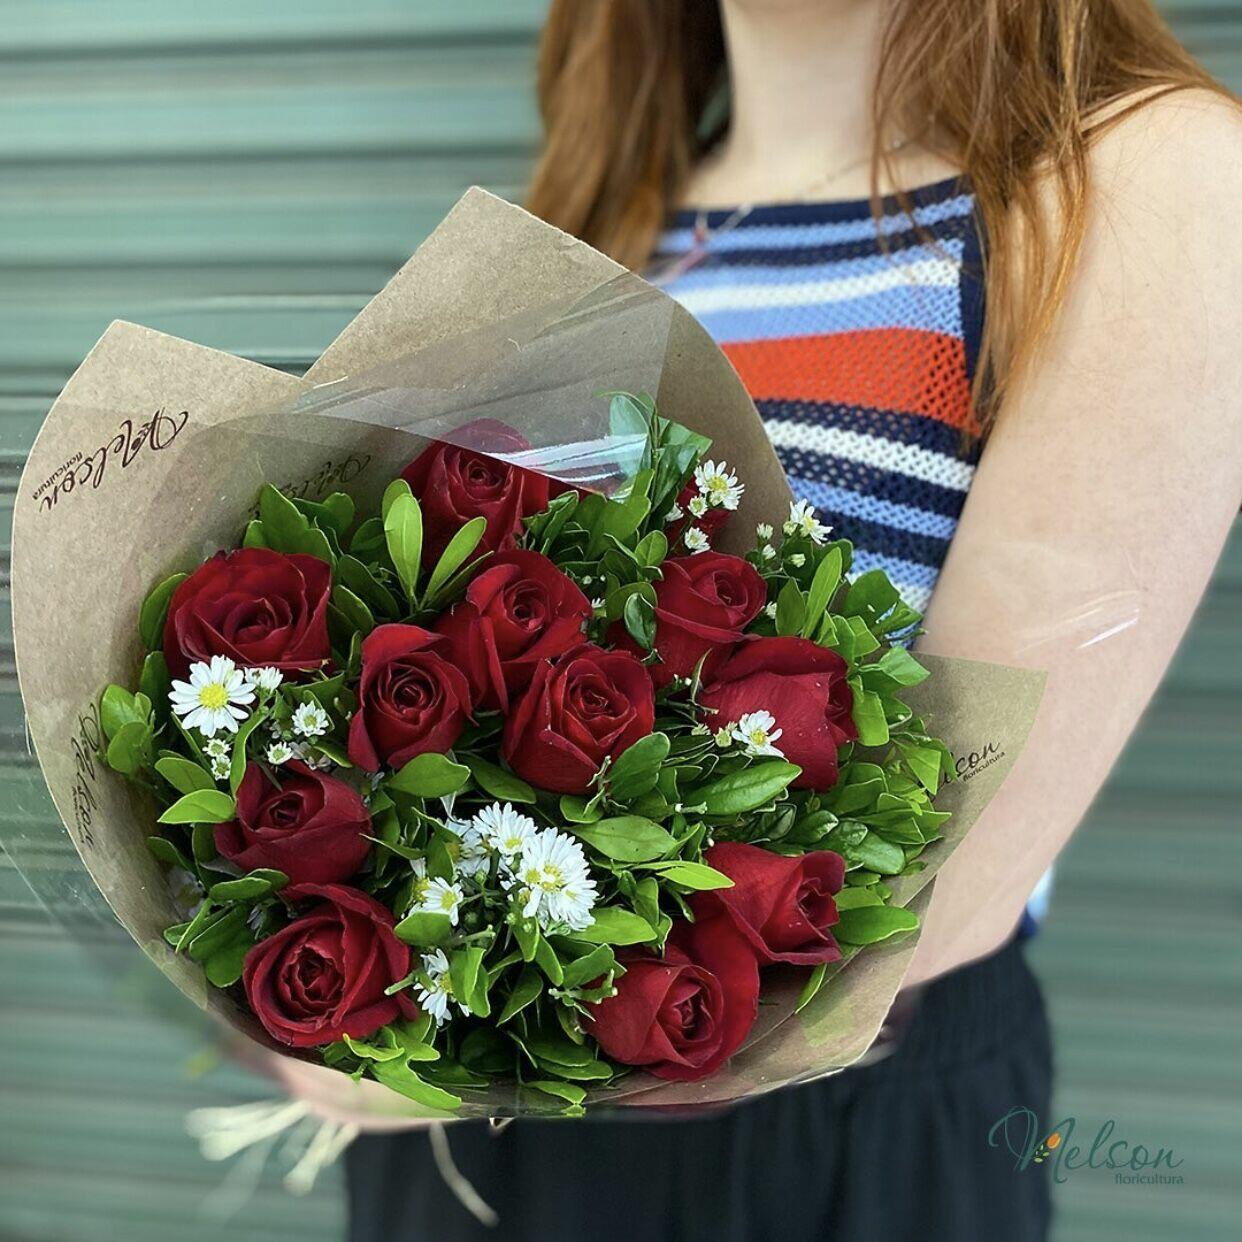 Comprar Buquê de Rosas Vermelhas com 1 Dúzia - R$95,00 - Floricultura Nelson